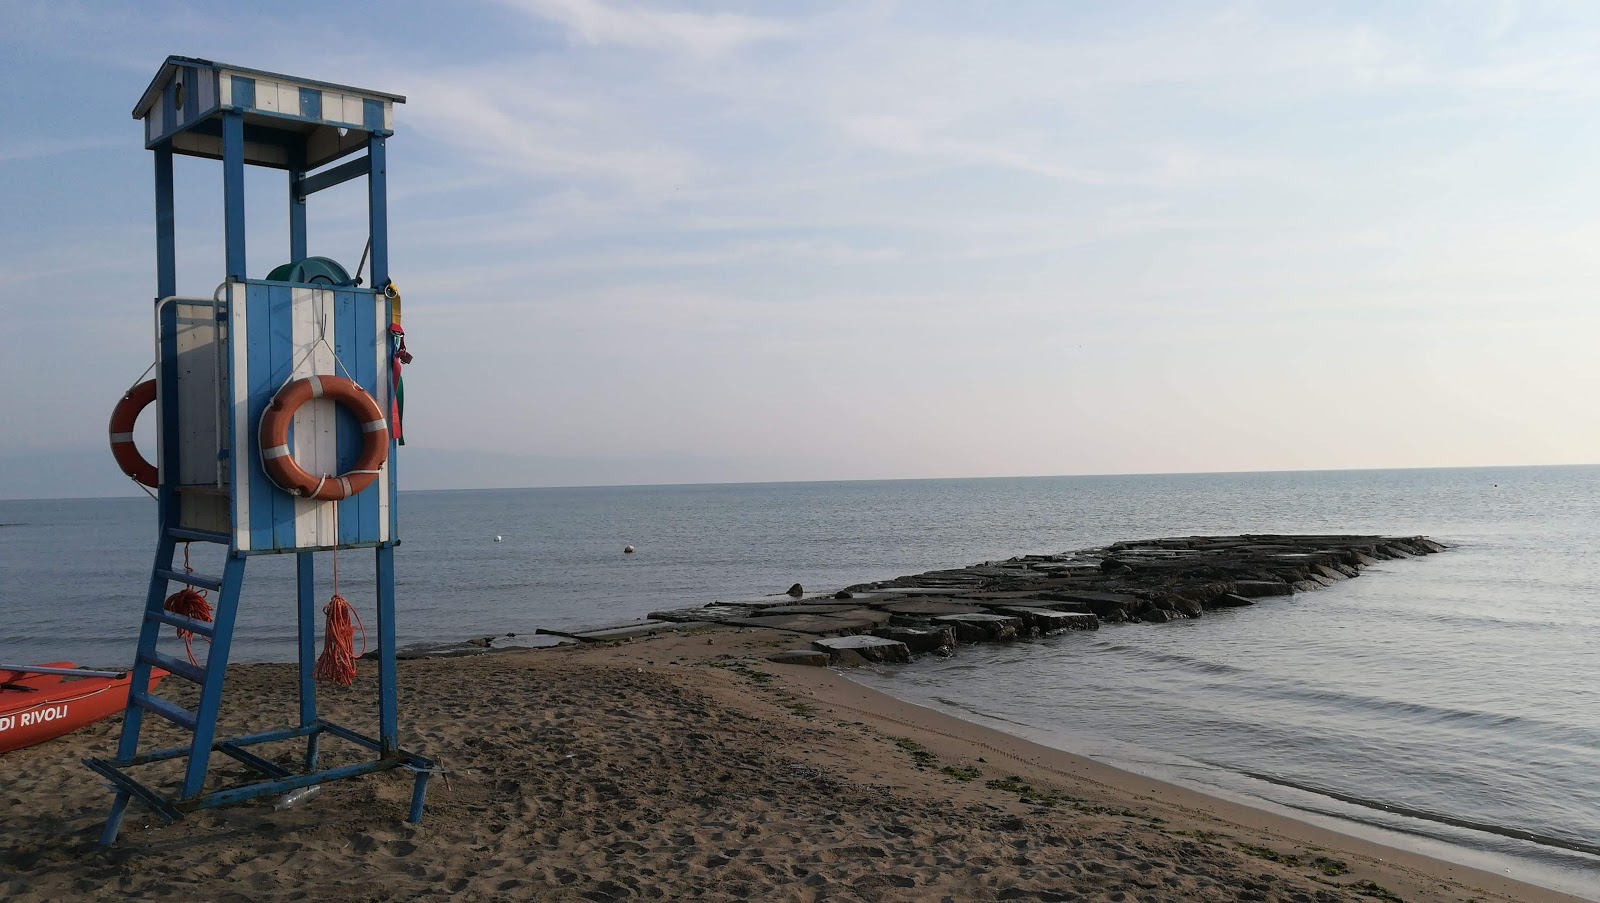 Foggiamare Beach'in fotoğrafı kahverengi kum yüzey ile